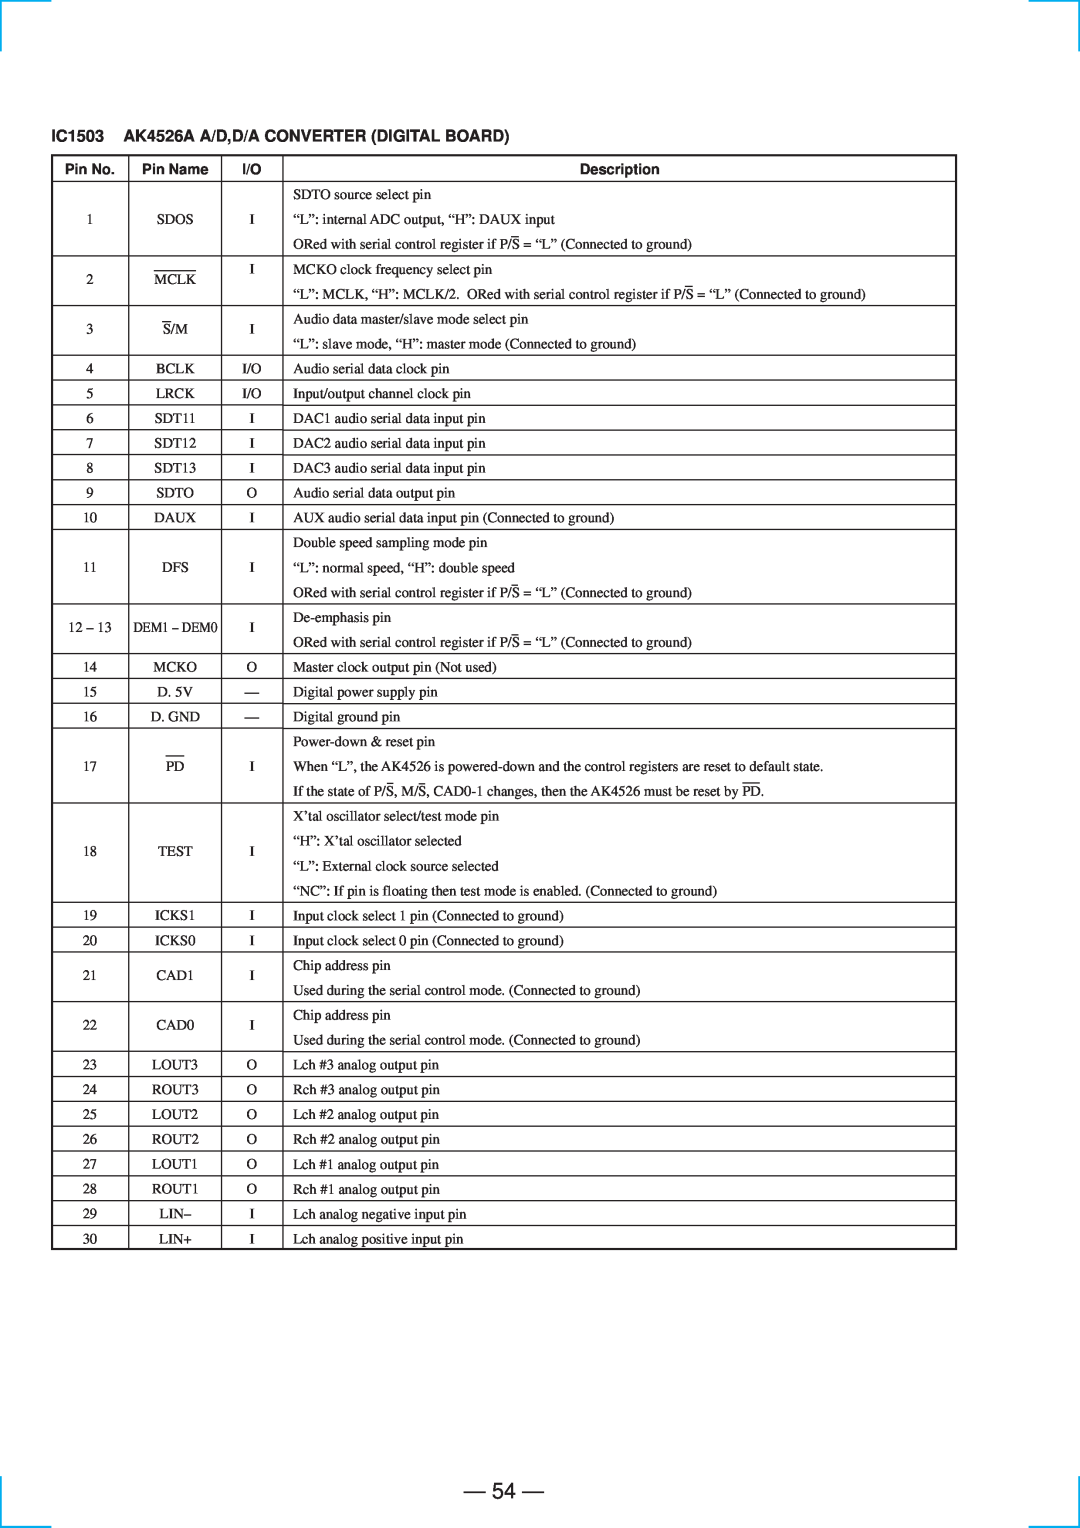 Sony STR-DE835 specifications 54, IC1503 AK4526A A/D,D/A CONVERTER DIGITAL BOARD, Pin No, Pin Name, Description 